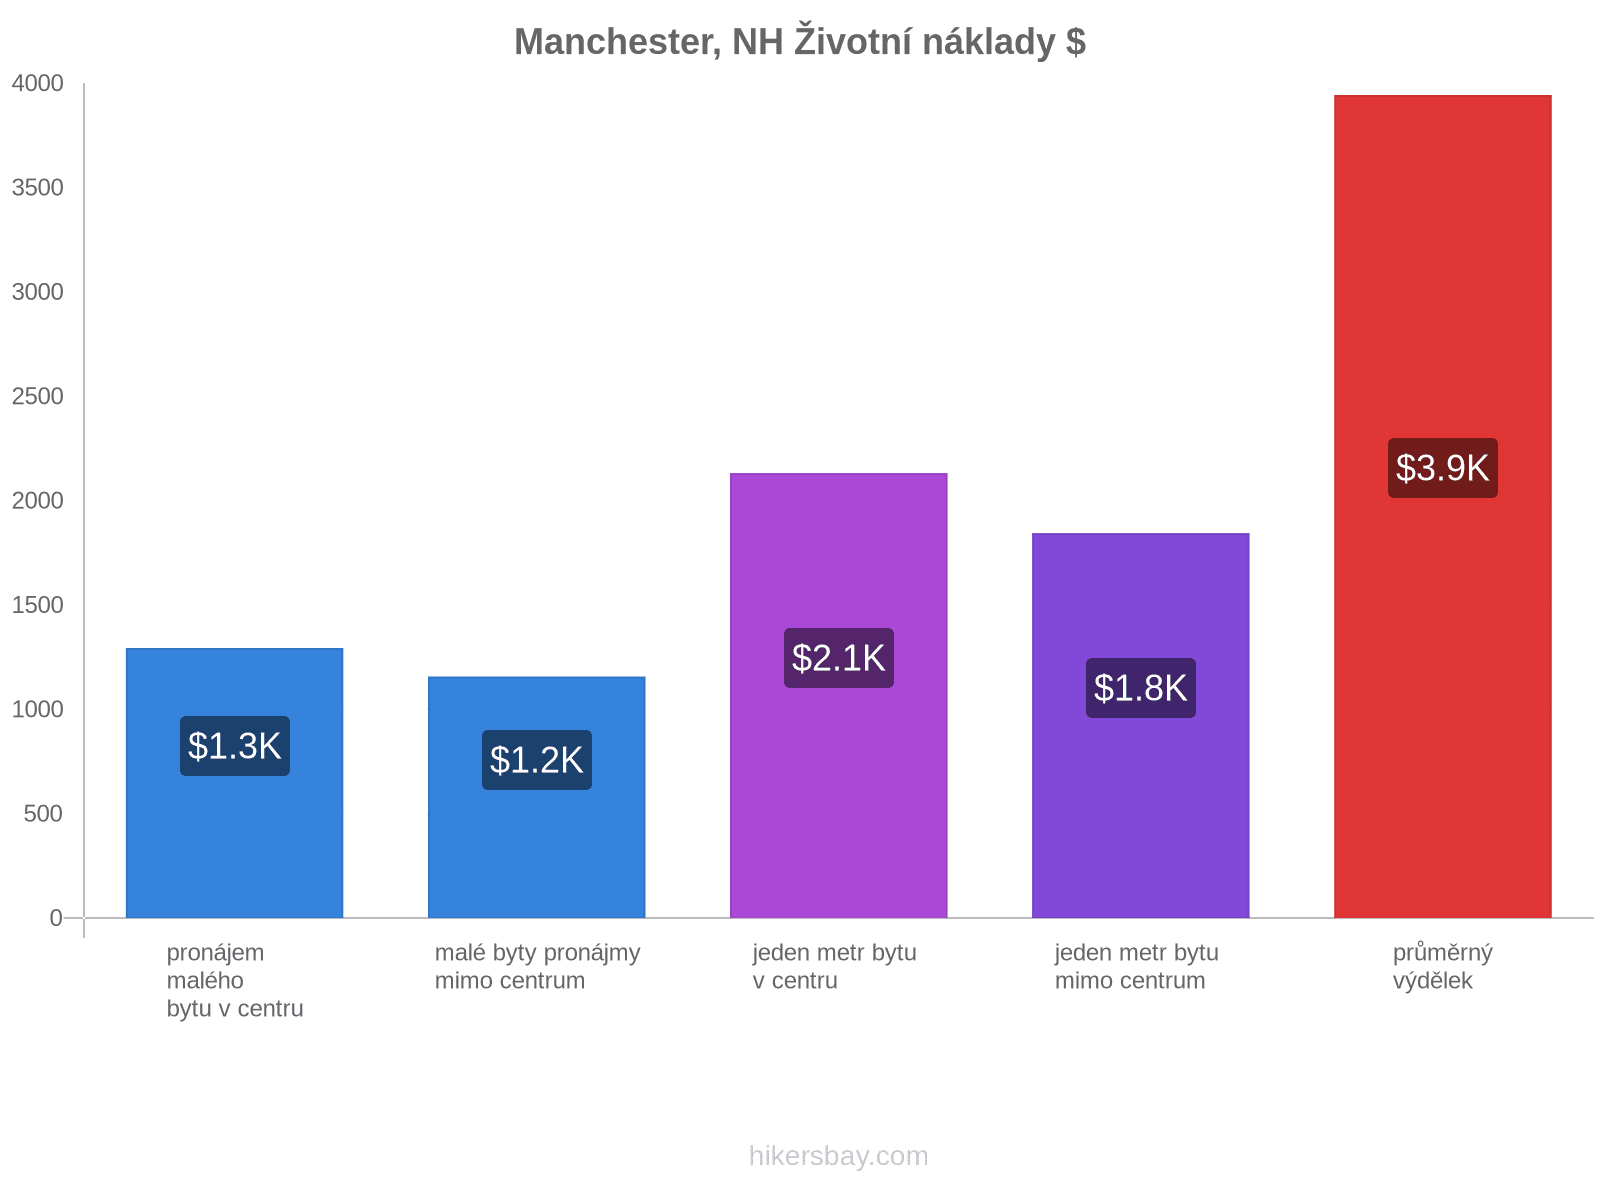 Manchester, NH životní náklady hikersbay.com